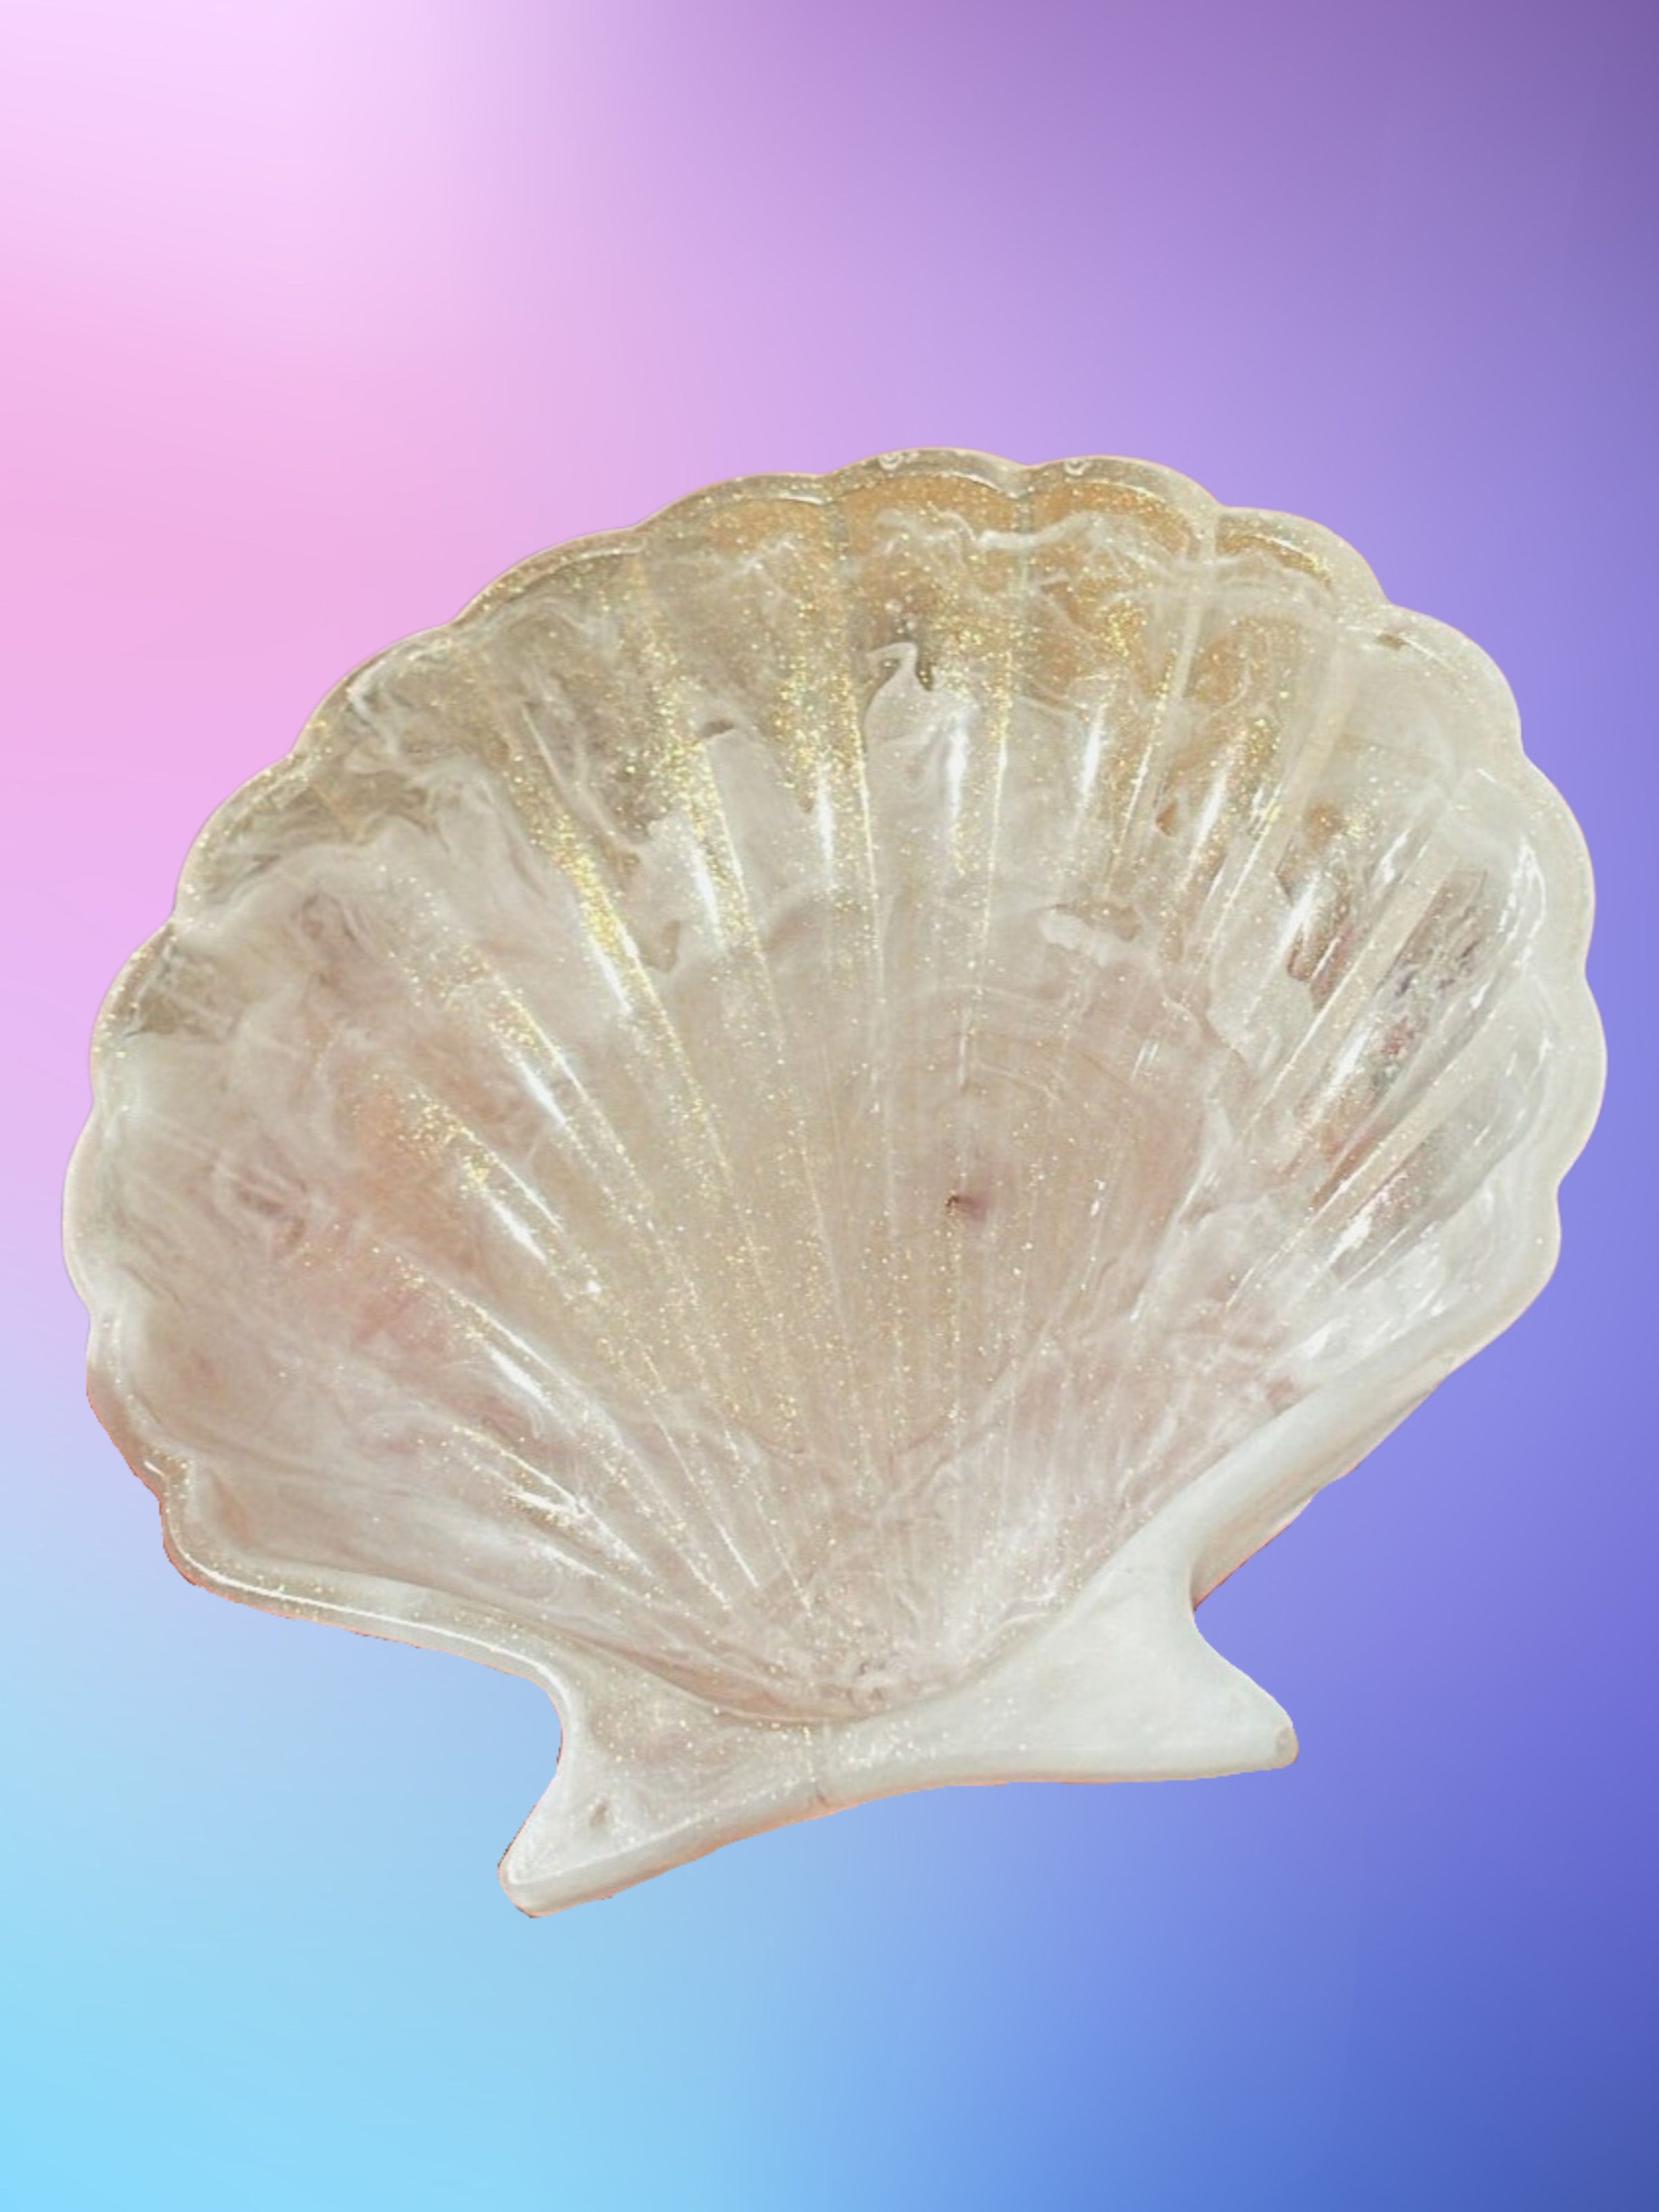 glitter shell, blue shell, elegant tray, gifts for beach lovers, shell trinket tray, decorative tray, seashell jewelry tray, shell shaped tray, mother of pearl tray, trinket tray, trinket dish, seashell lovers, beach lovers, seashell jewelry tray